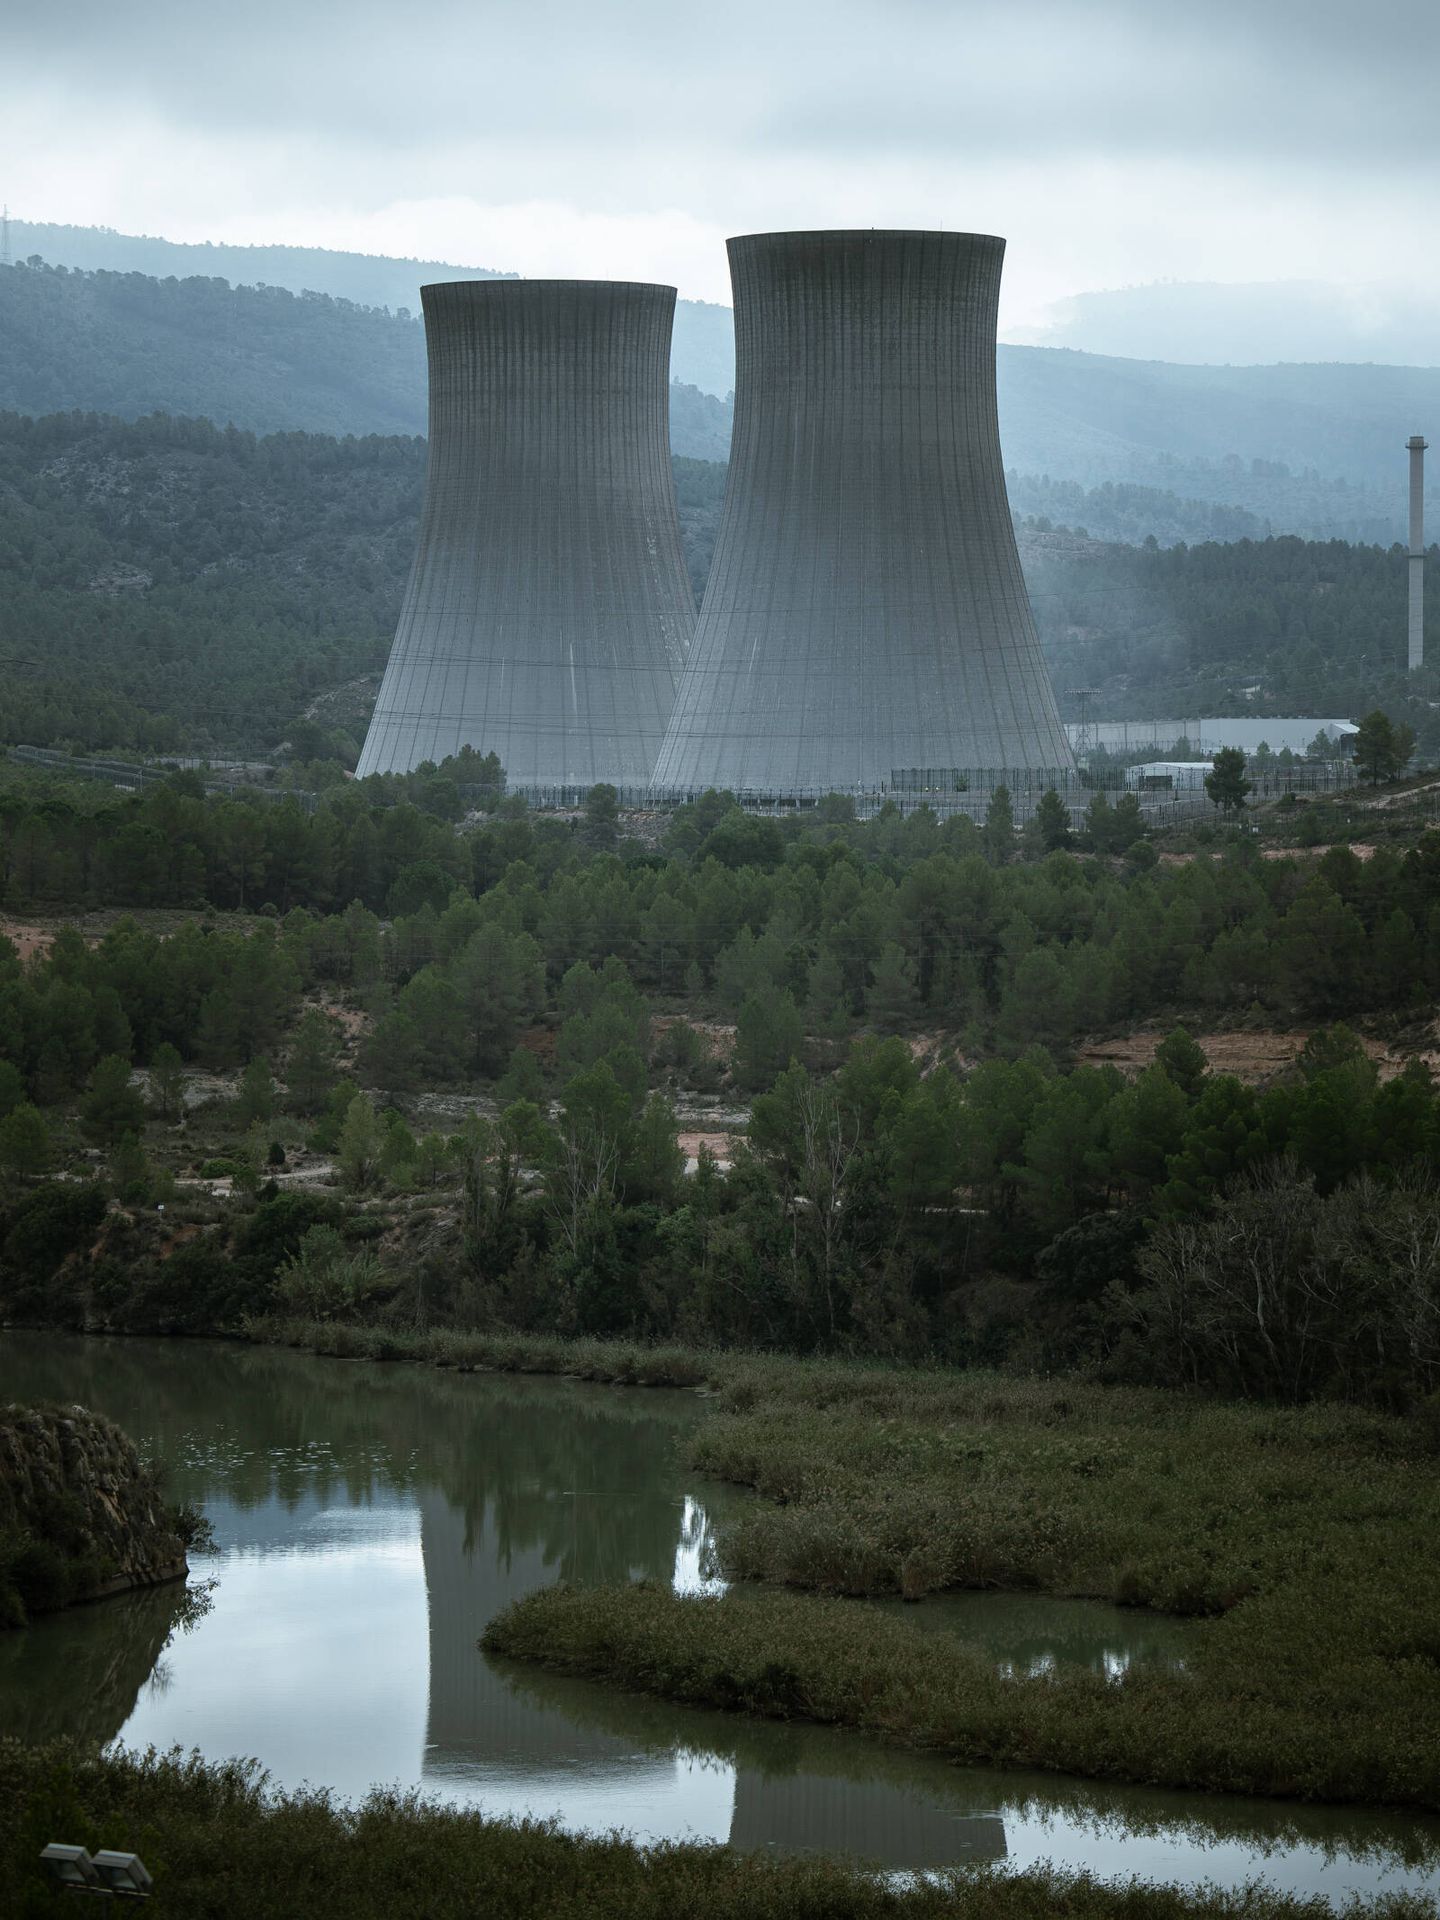 Las chimeneas de refrigeración de la central nuclear de Cofrentes, operada por Iberdrola. (B. A.)